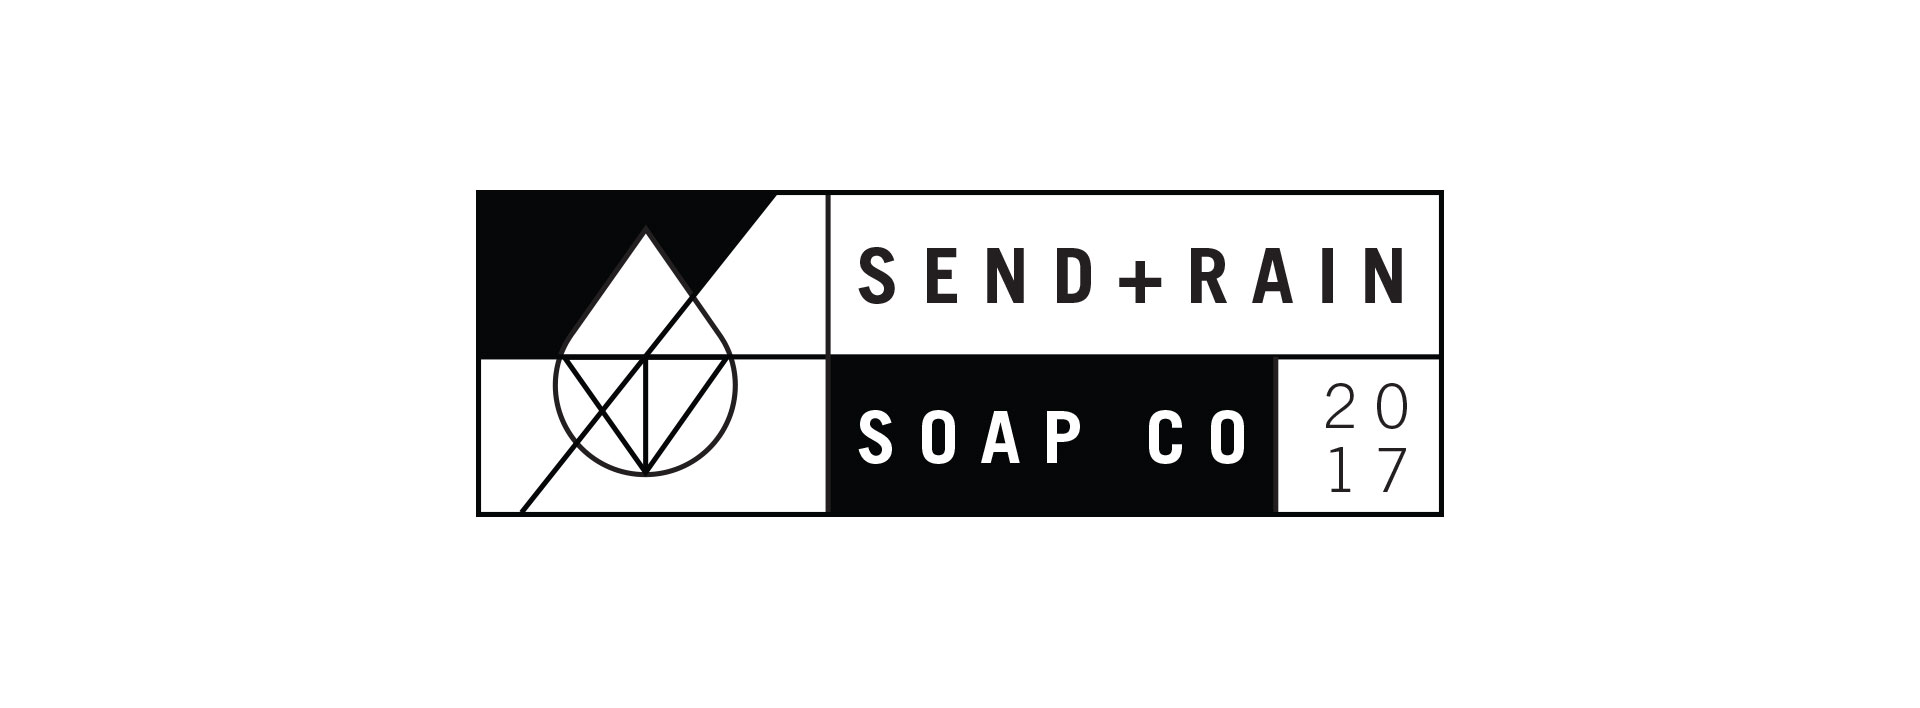 Send Rain soap company logo design alternative